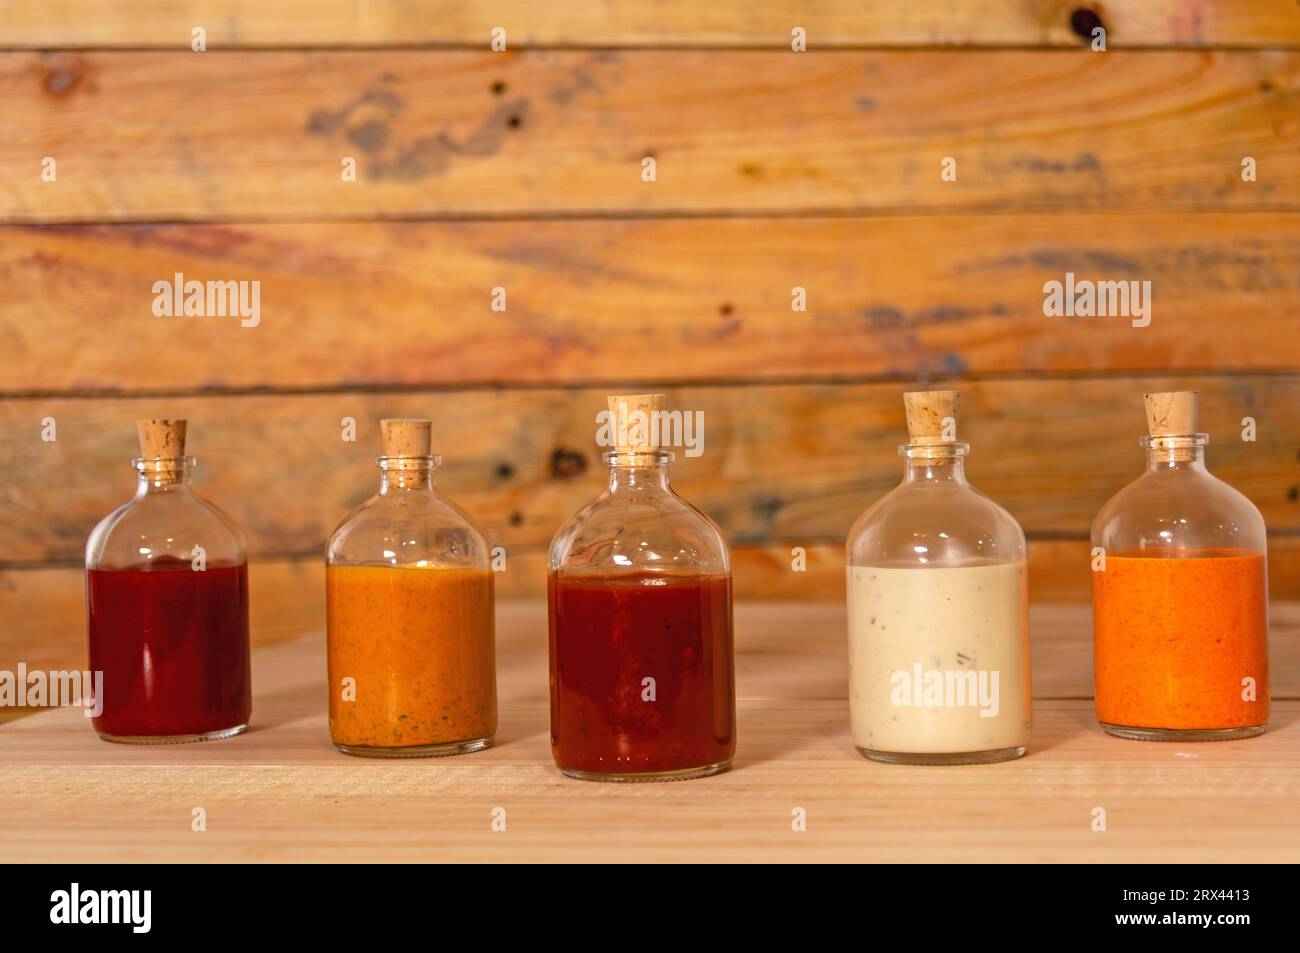 Handgemachte scharfe Saucen in Glasflaschen mit Kork auf farbigem Holzsockel - Salsas picantes hechas artesanalmente en botellas de vidrio con corcho Sob Stockfoto